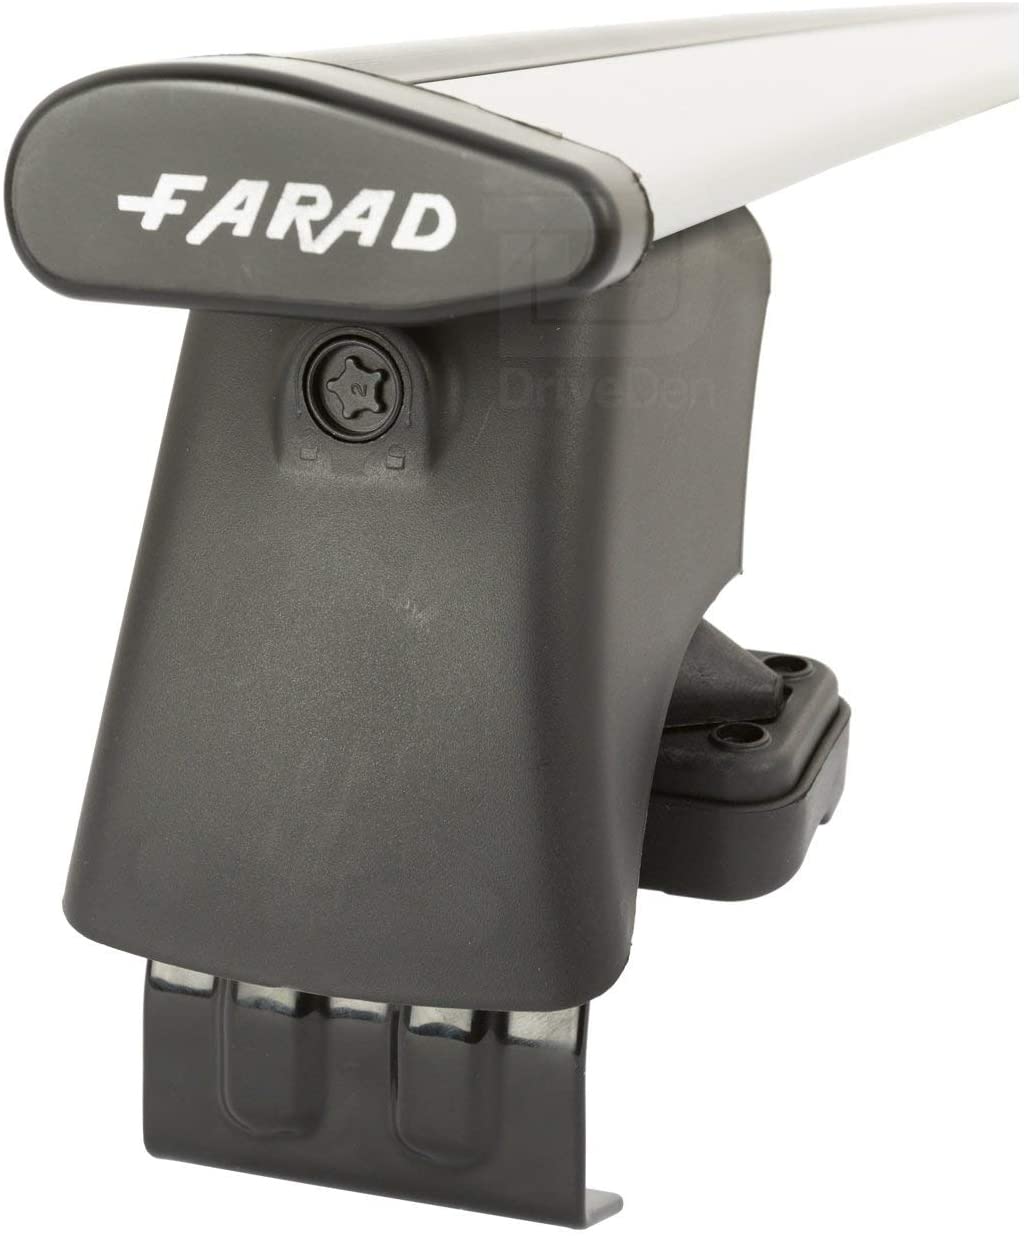 FARAD-Kit H2 per barre portatutto - Skoda Octavia 2013-2020 (senza corrimano)